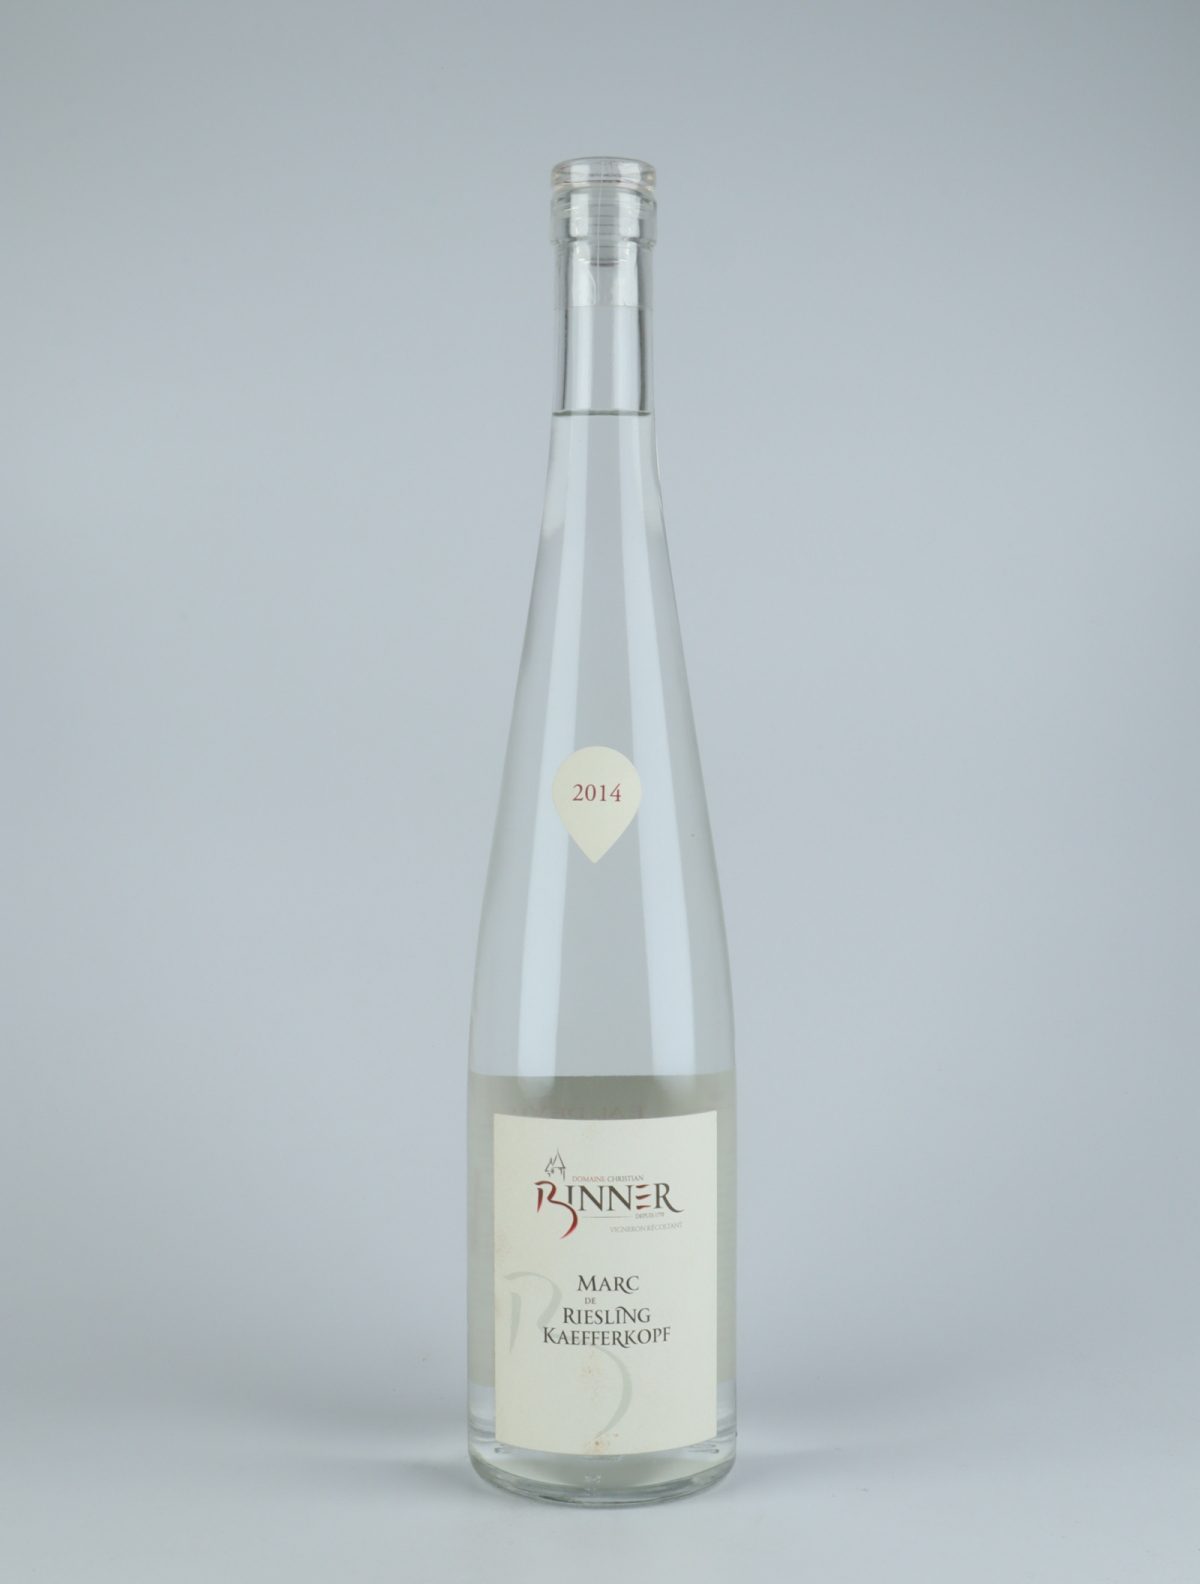 A bottle 2014 Marc de Riesling Kaefferkopf Spirits from Domaine Christian Binner, Alsace in France